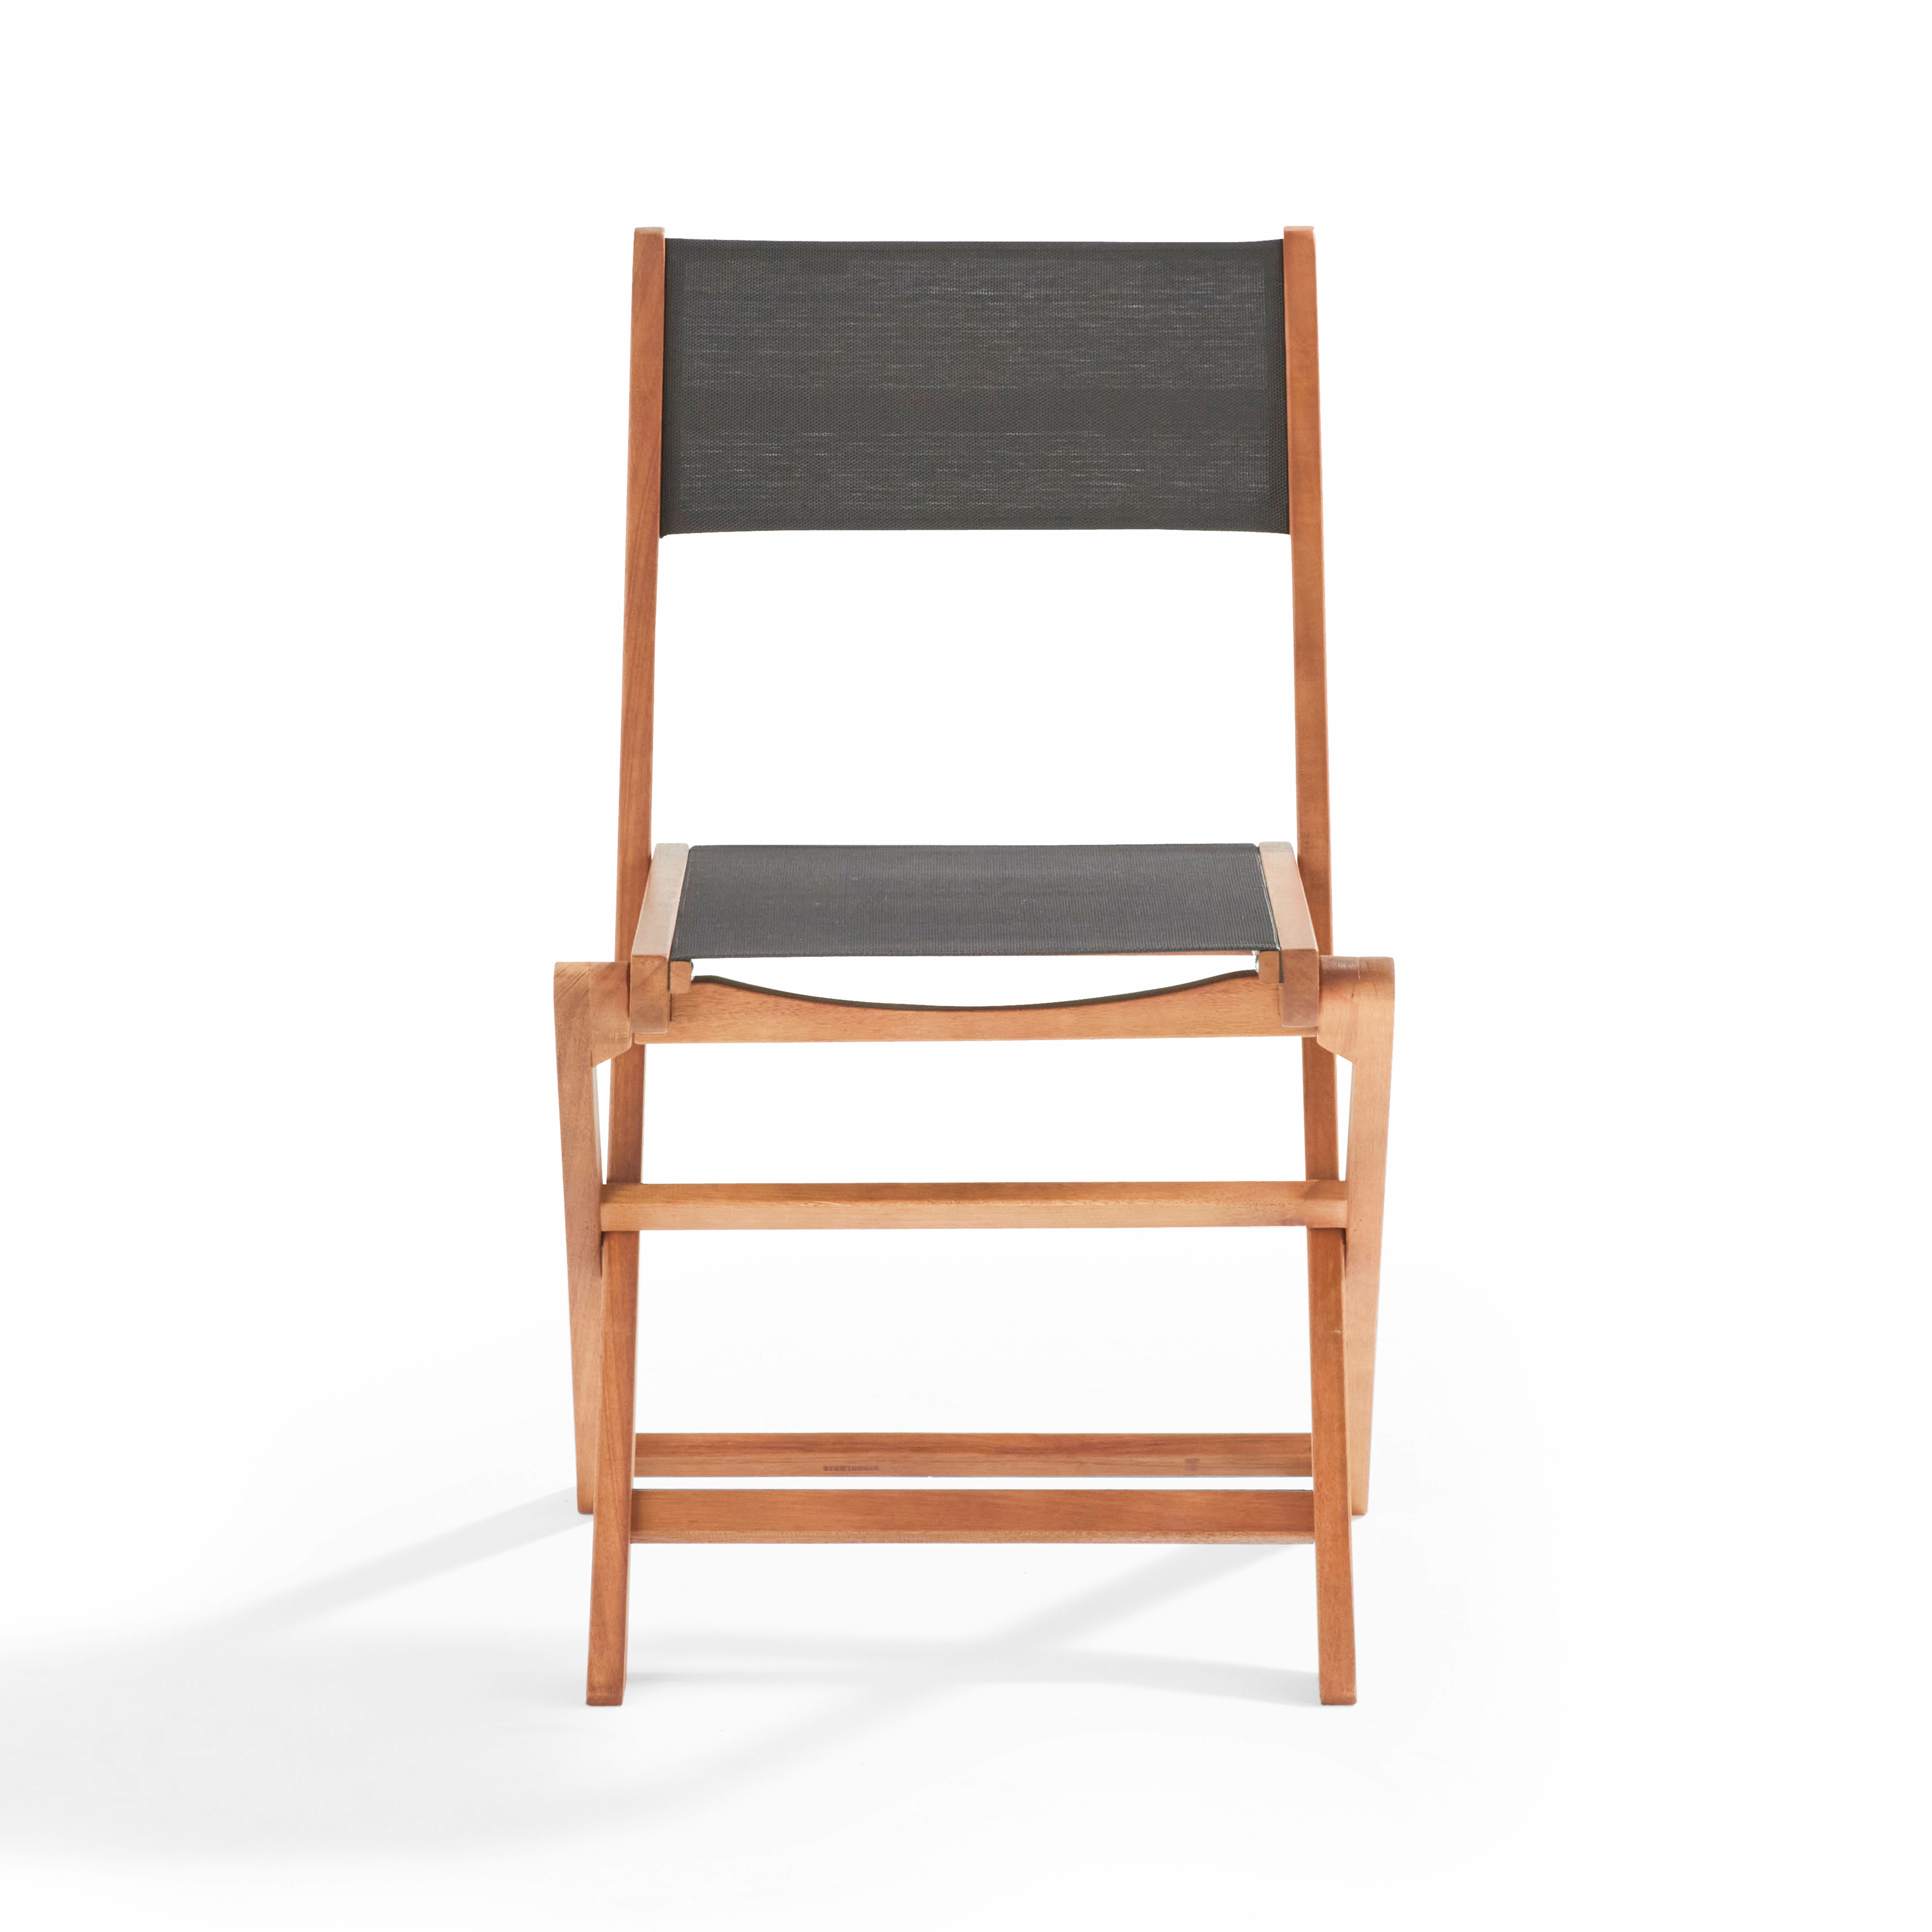 Lote de 2 sillas plegables en madera de teca y textileno color gris topo